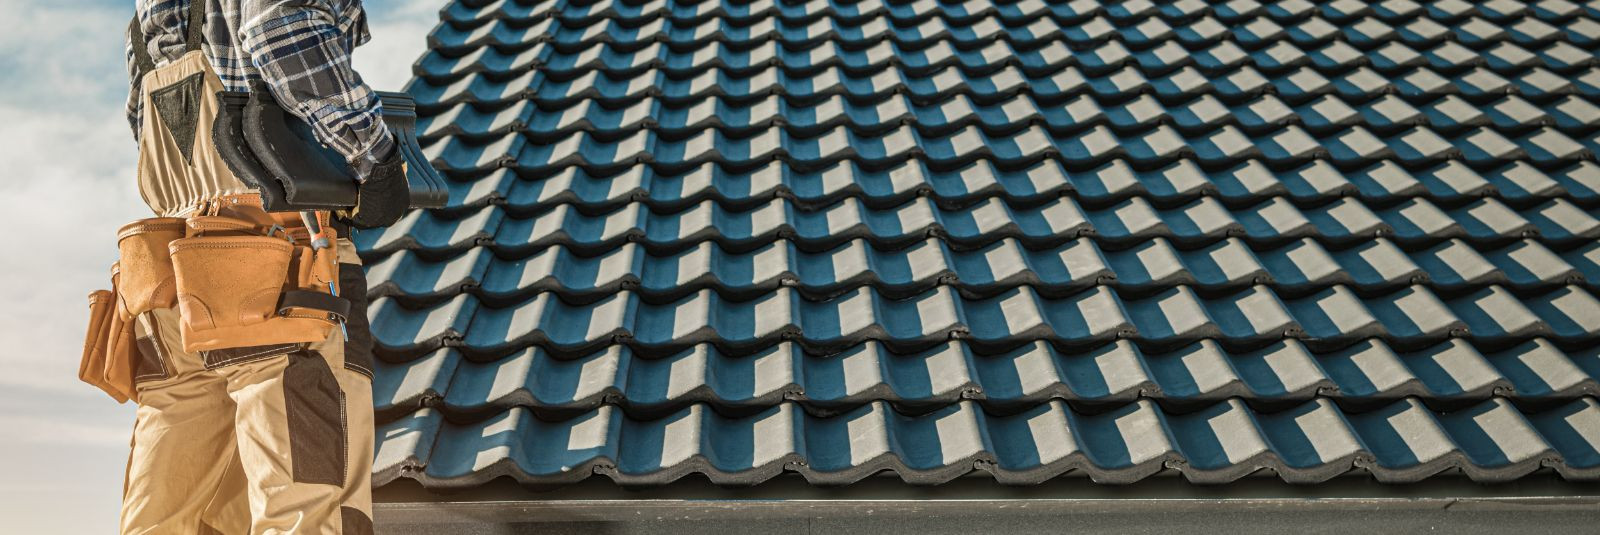 Üks olulisemaid aspekte iga hoone vastupidavuses ja esteetikas on selle katus. Õige katuselahendus mitte ainult ei kaitse hoonet ilmastiku mõjude eest, vaid ann